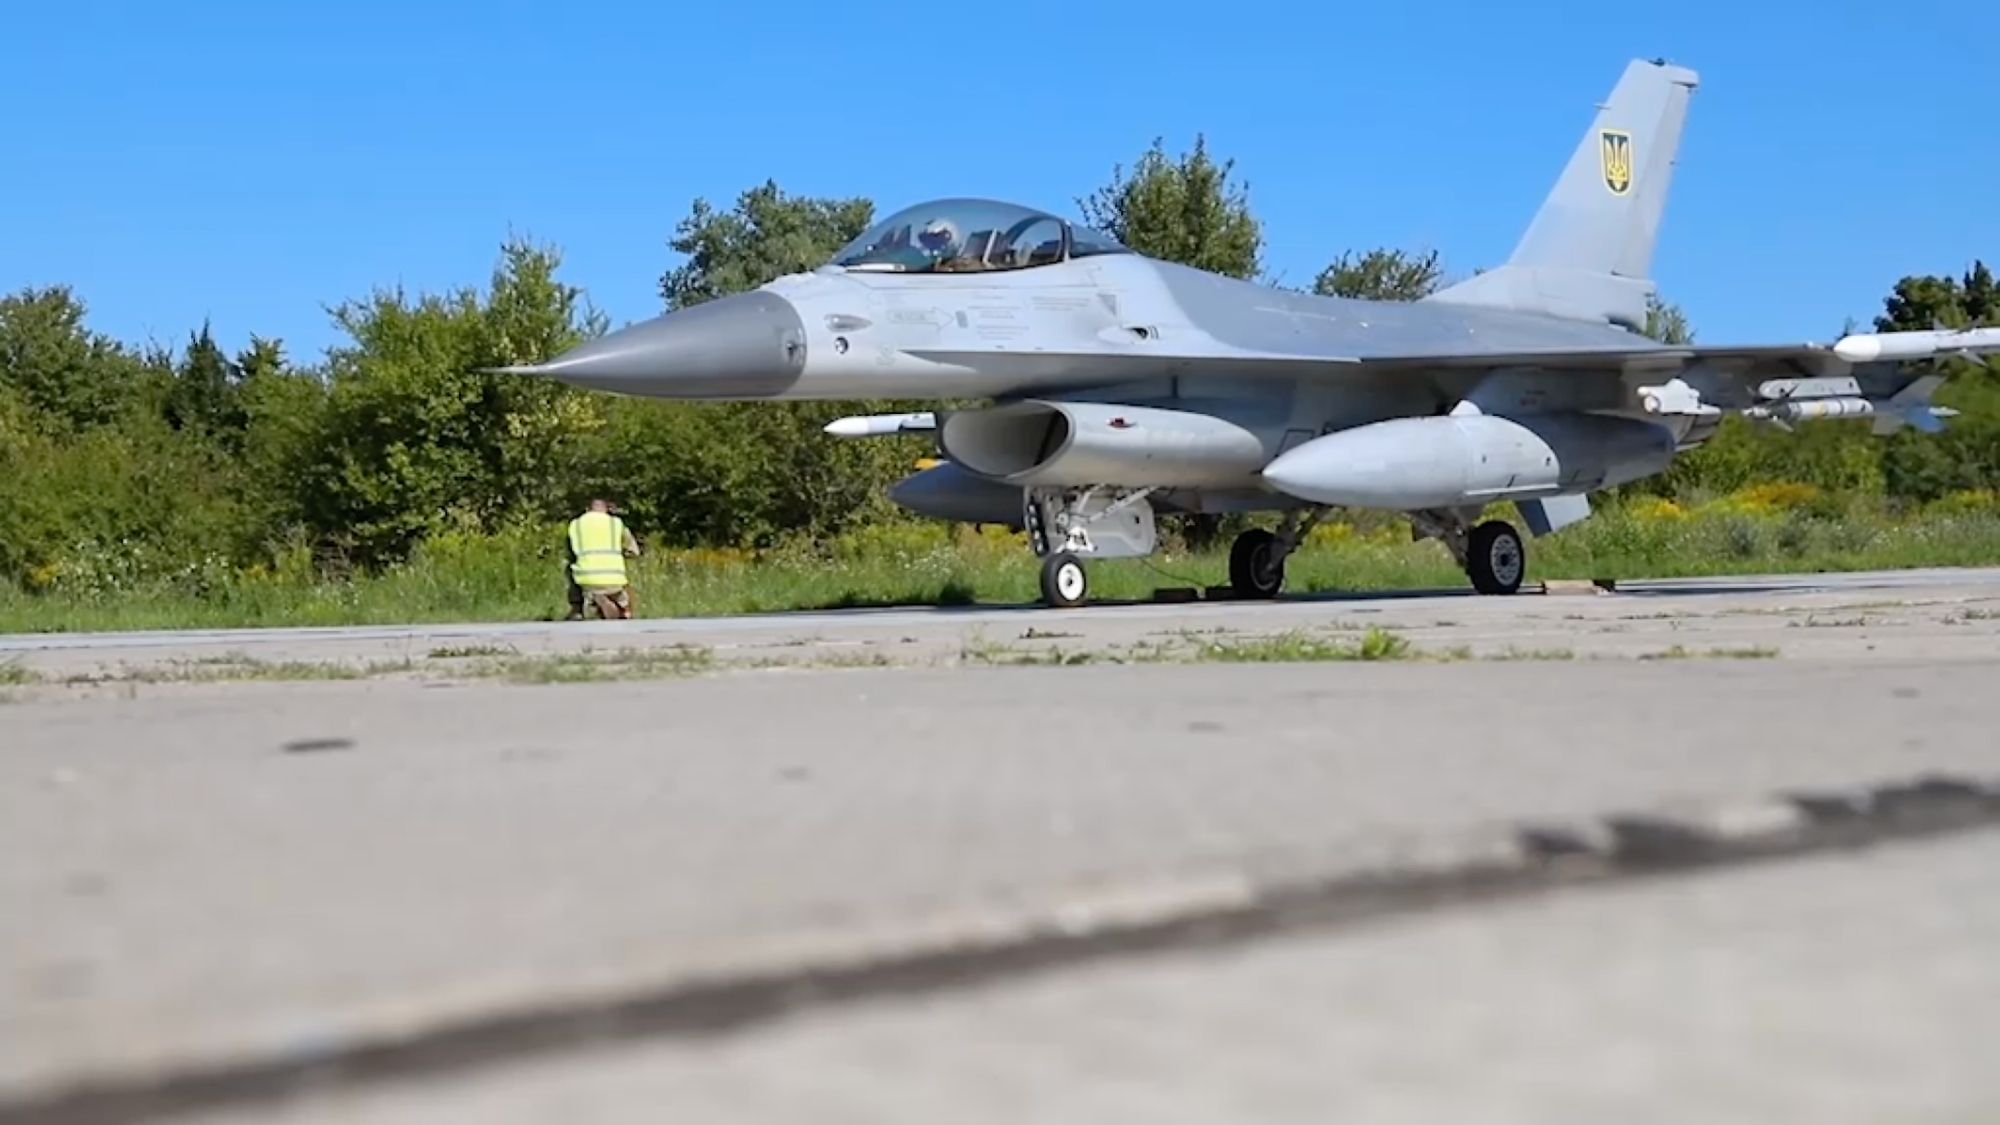 Volodymyr Zelensky bestätigte, dass die ukrainischen Luftstreitkräfte F-16 Fighting Falcon Kampfflugzeuge erhalten haben